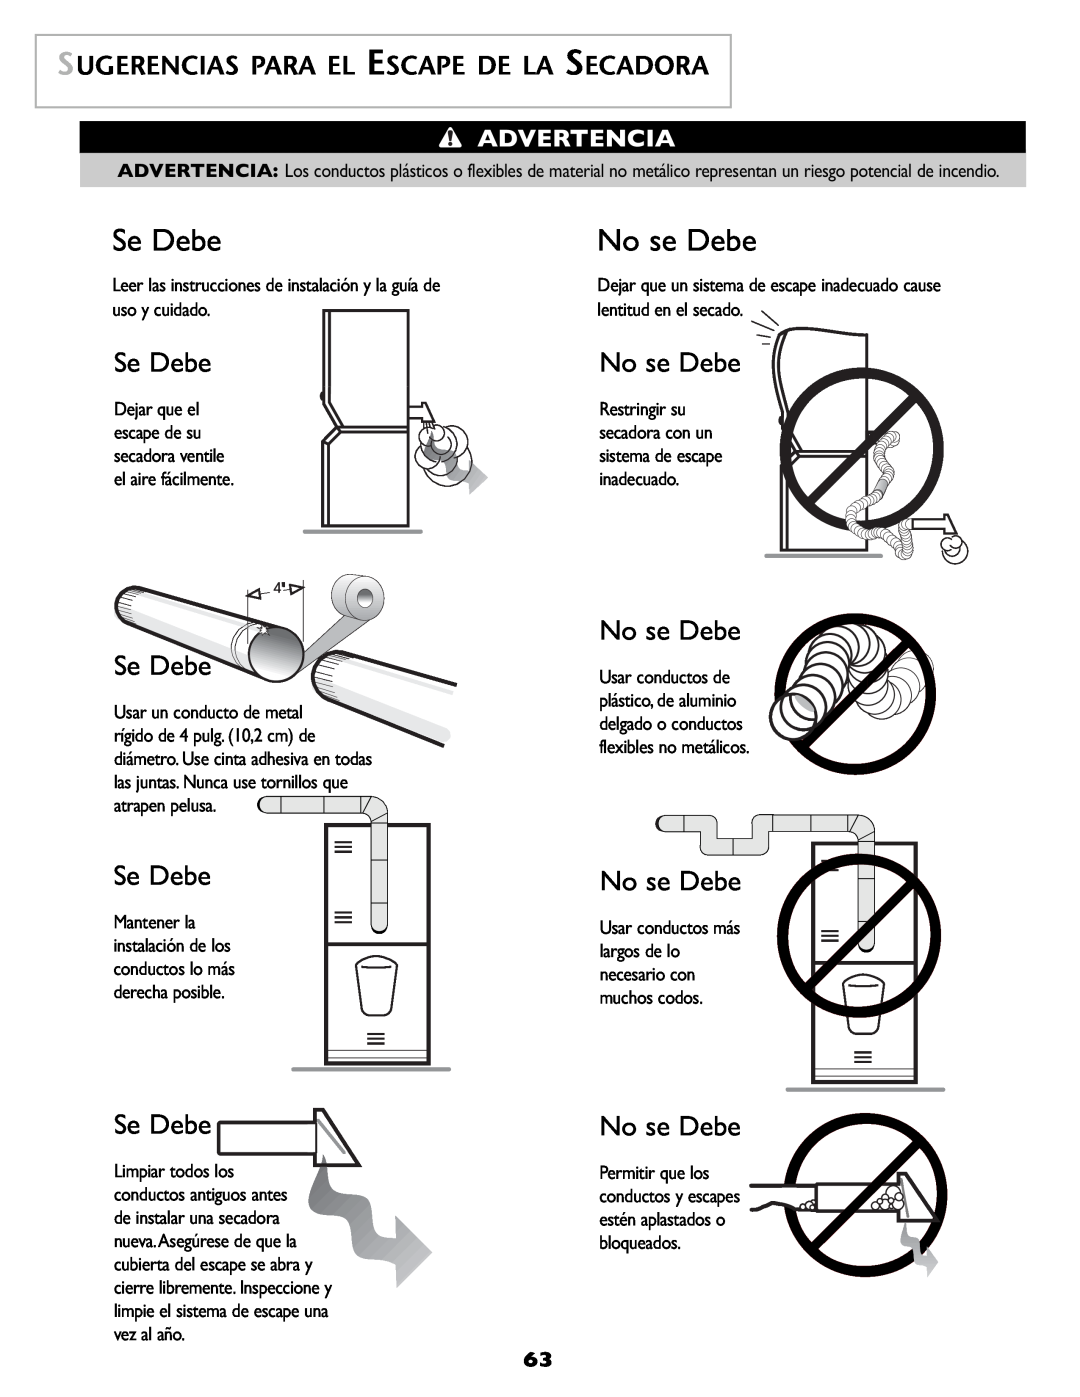 Maytag SL-3 important safety instructions Se Debe, No se Debe, Sugerencias Para El Escape De La Secadora, Advertencia 